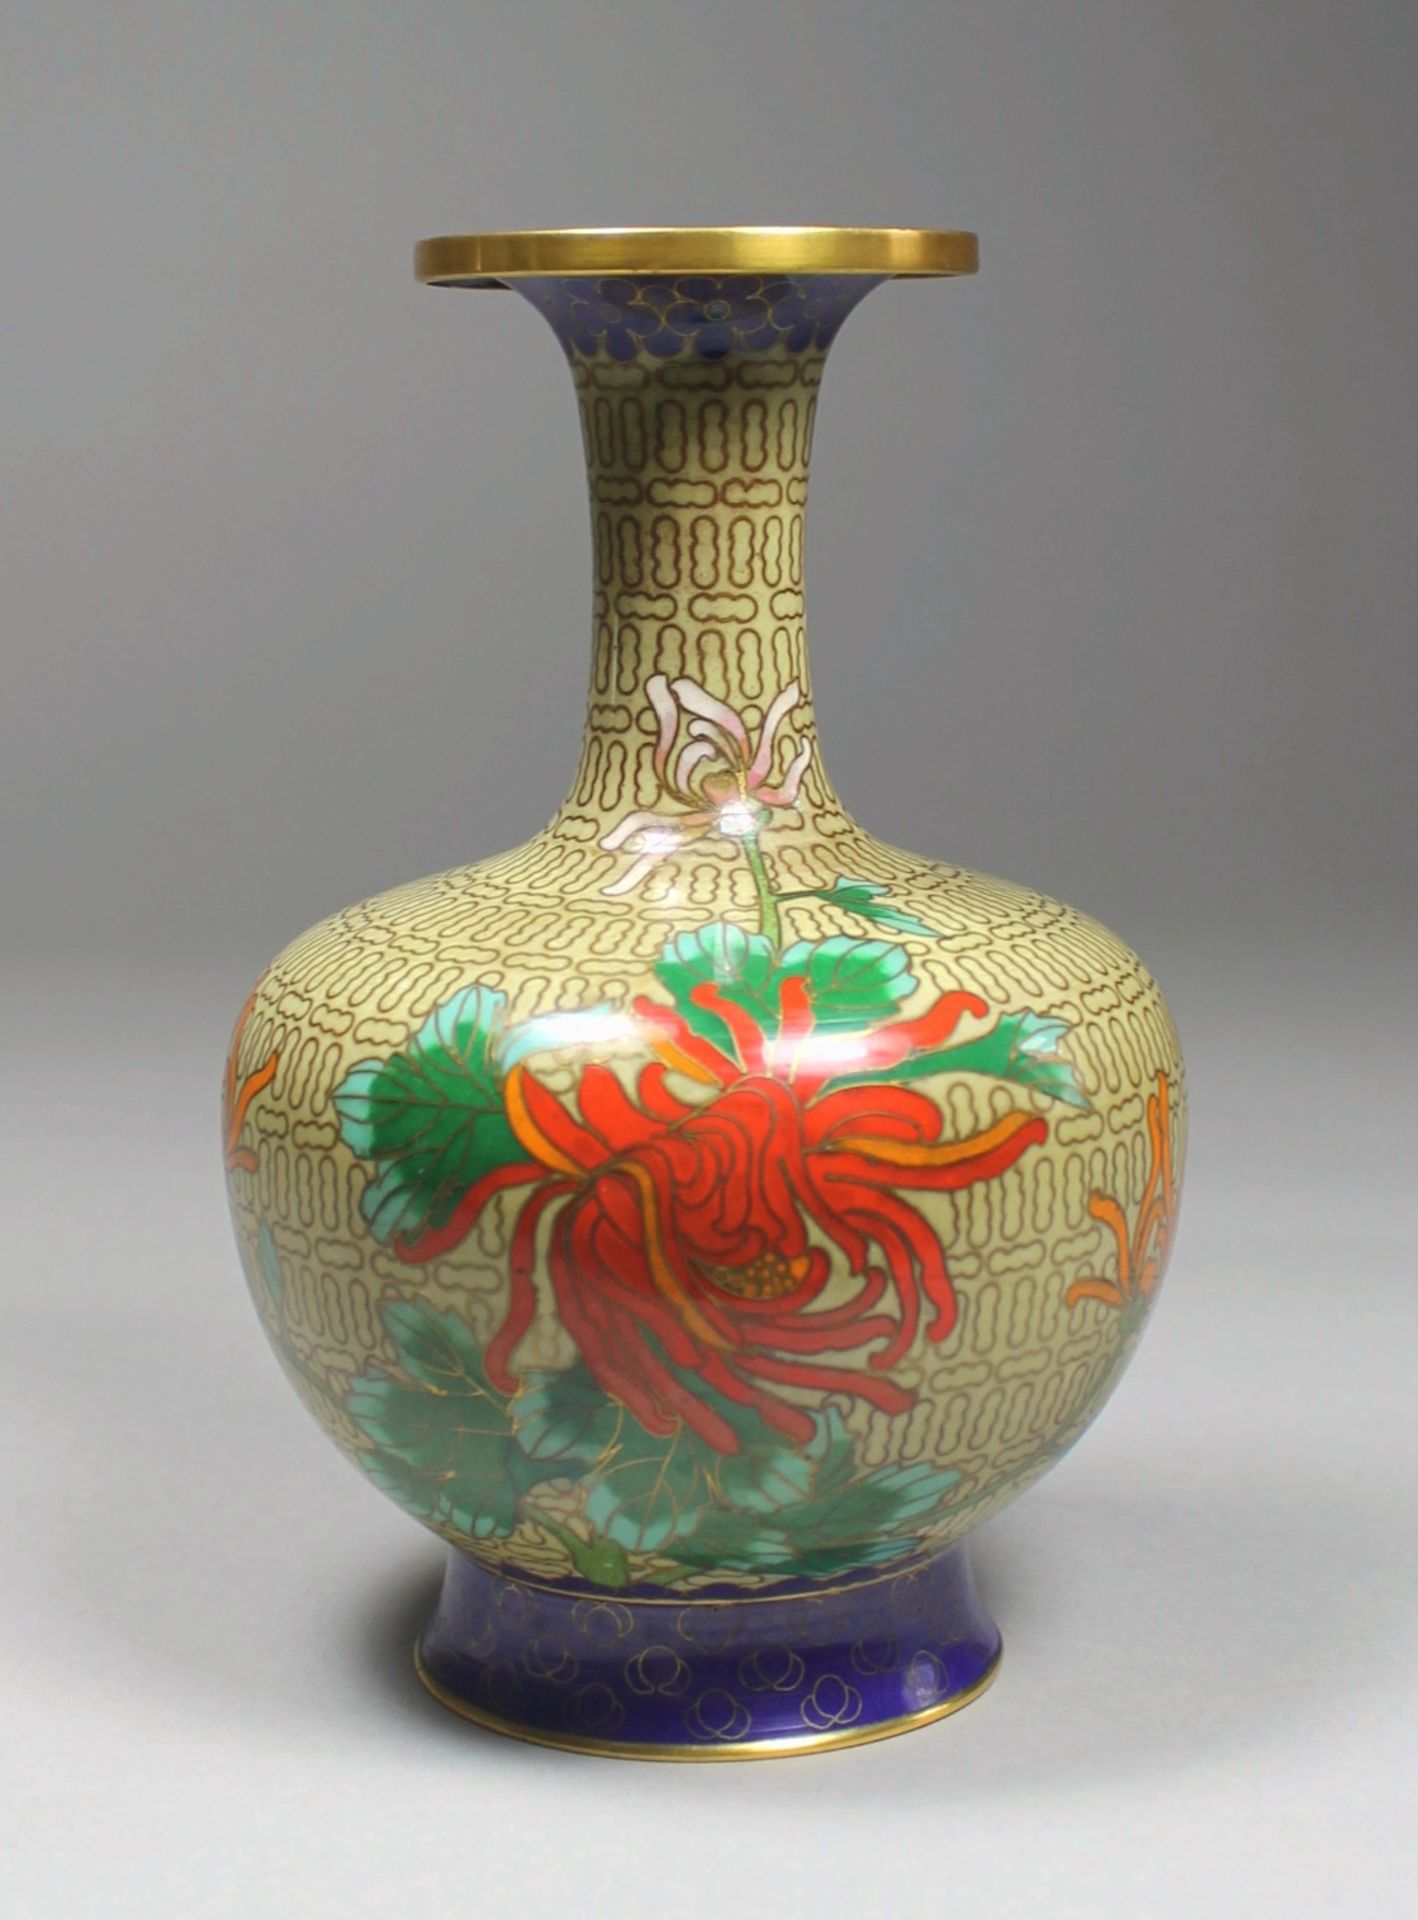 1 Cloisonné-Vase Messing/Emaille, polychromer floraler Dekor auf beigem Untergrund, eingezogener